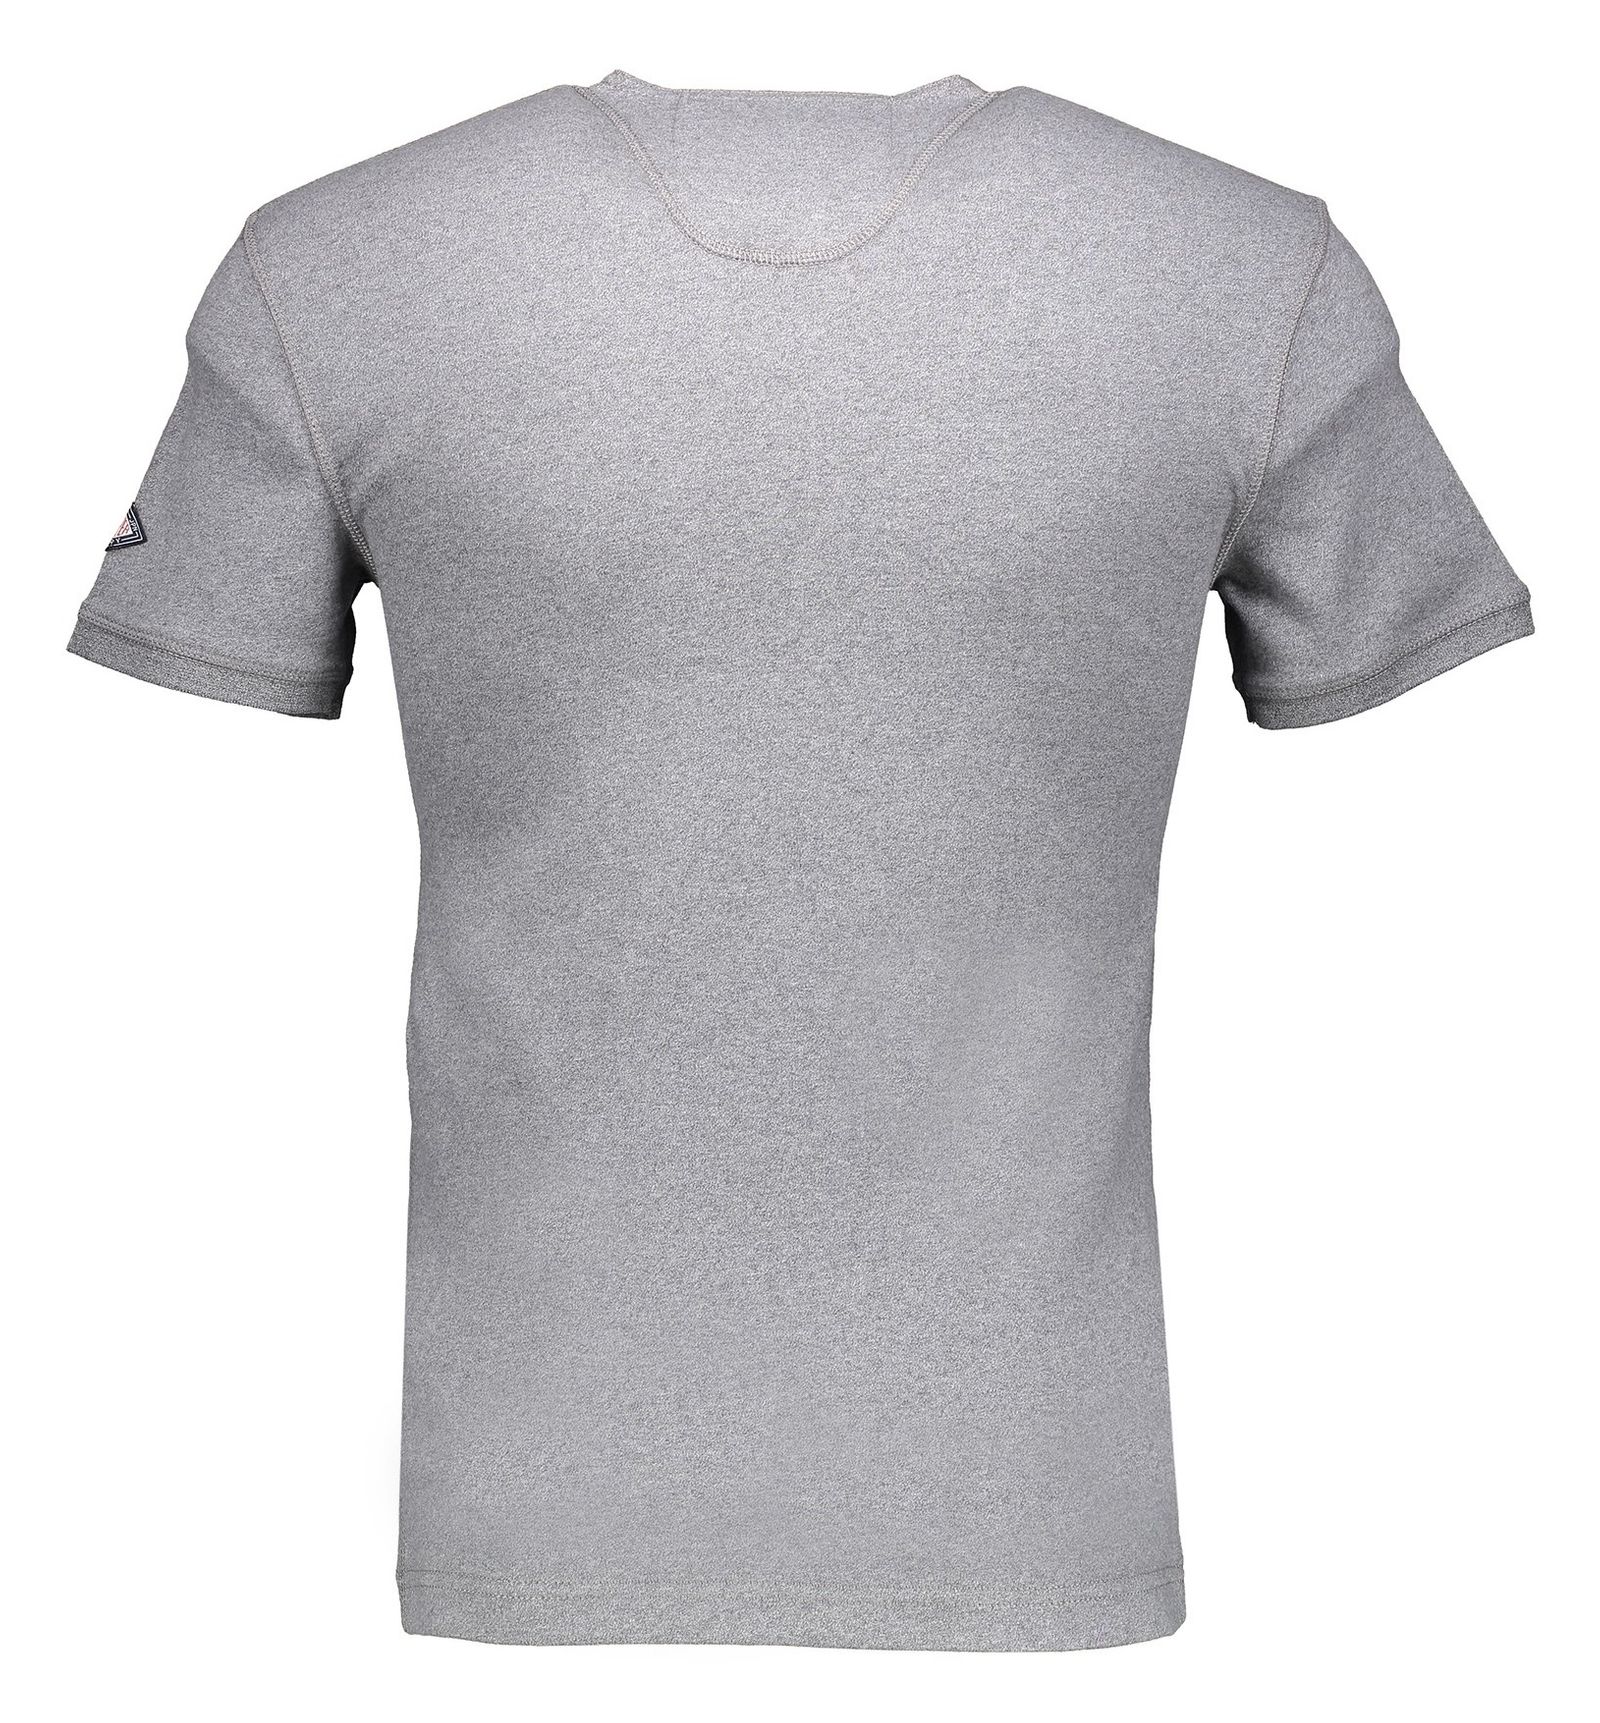 تی شرت نخی مردانه - سوپردرای - طوسي روشن - 3